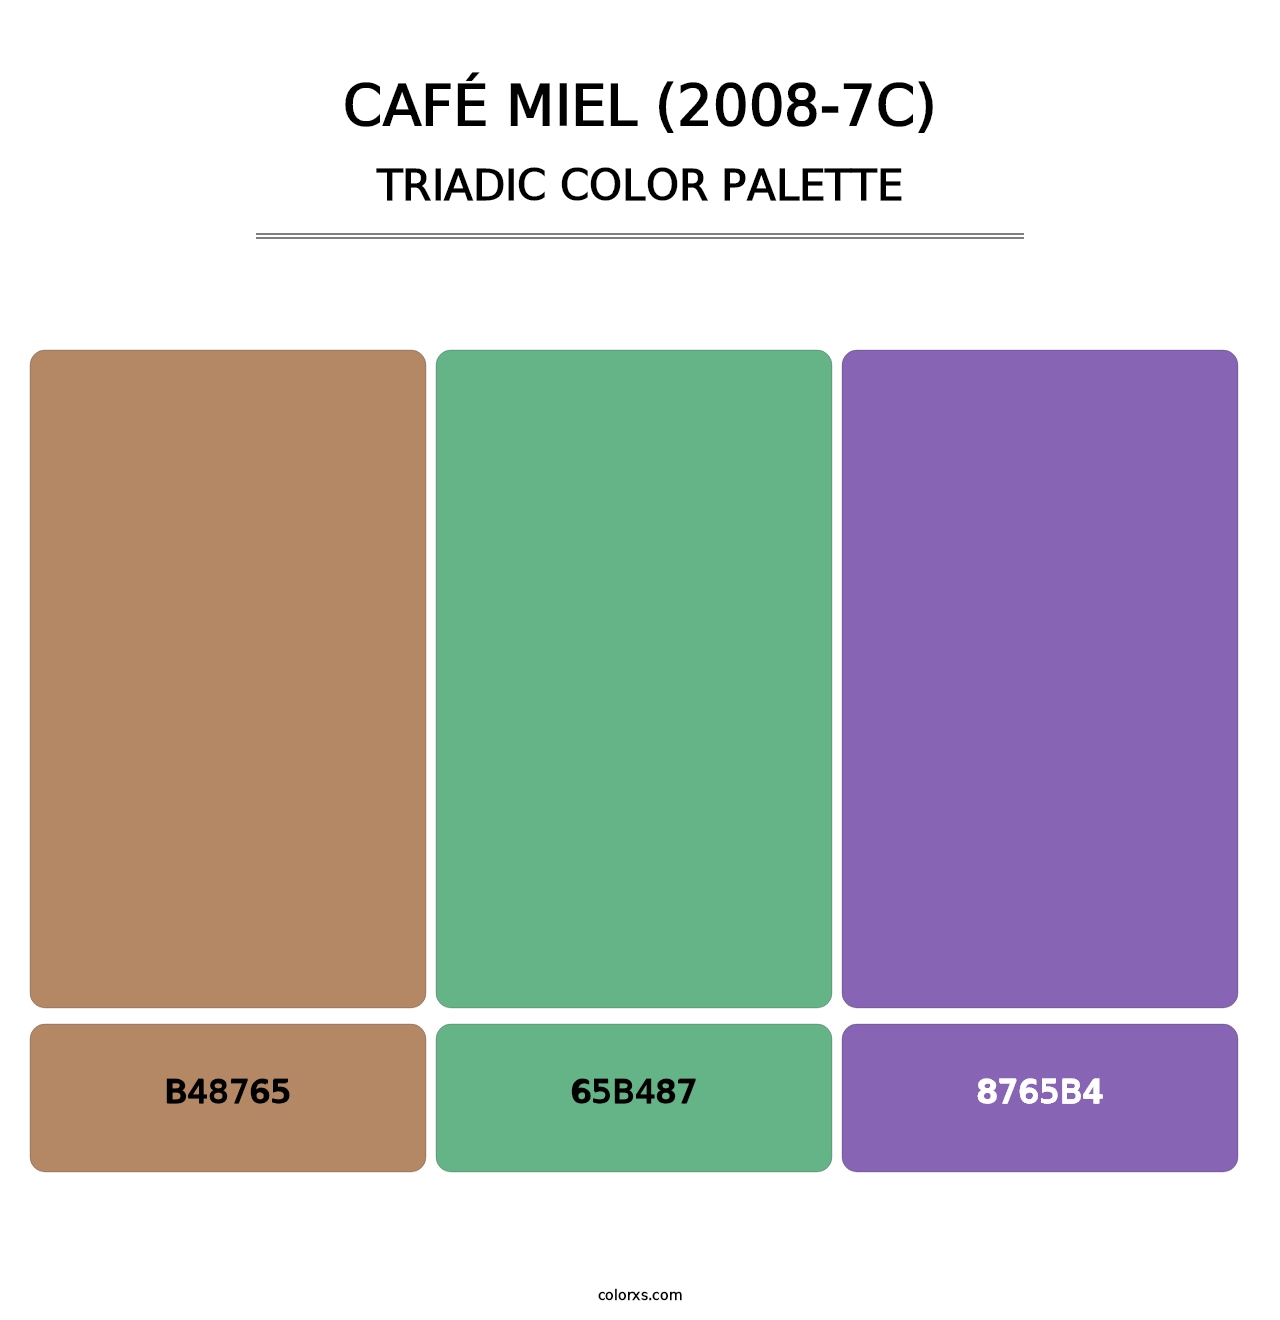 Café Miel (2008-7C) - Triadic Color Palette